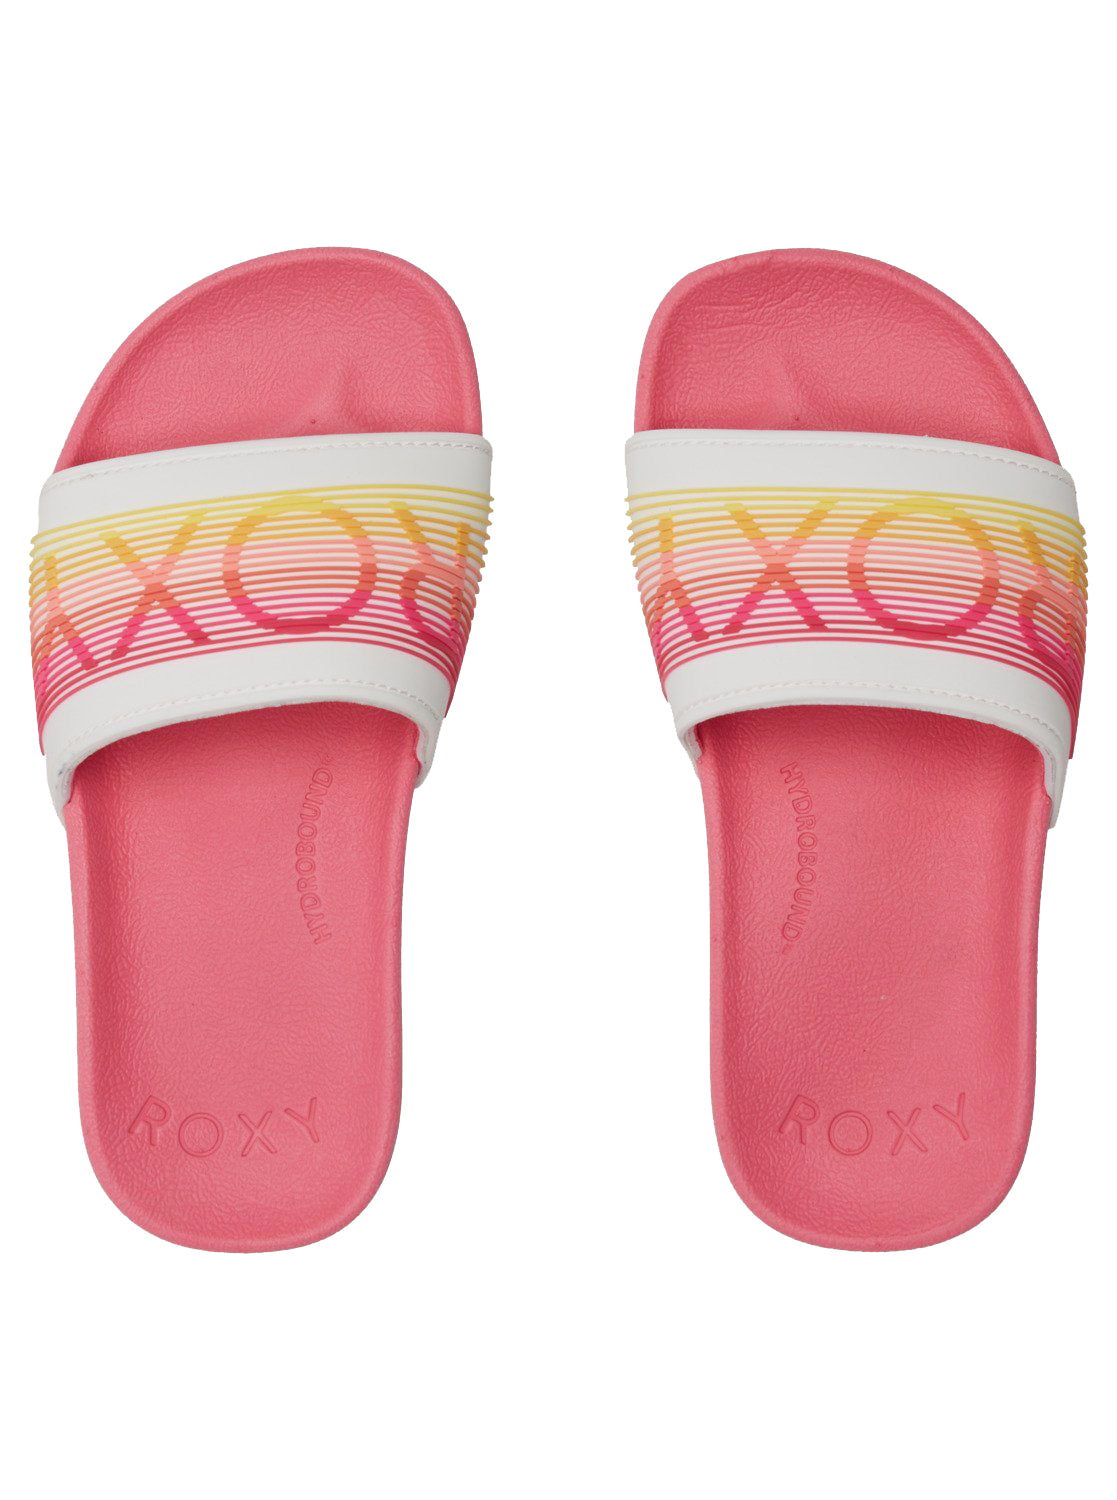 Roxy Slippy LX Girls Sandal PN1-Pink 1 11 C